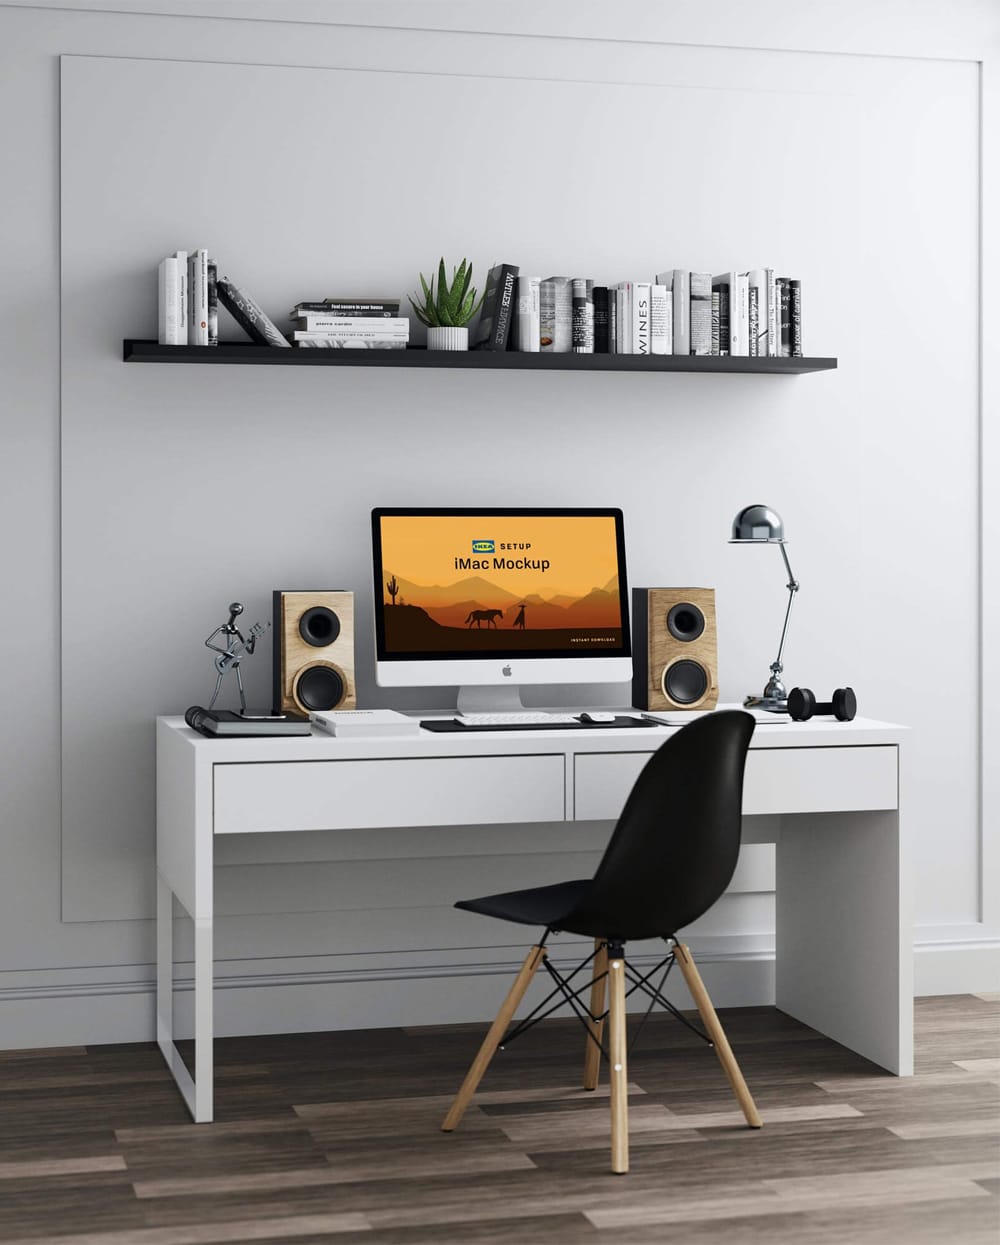 Free IKEA Workstation iMac Mockup PSD